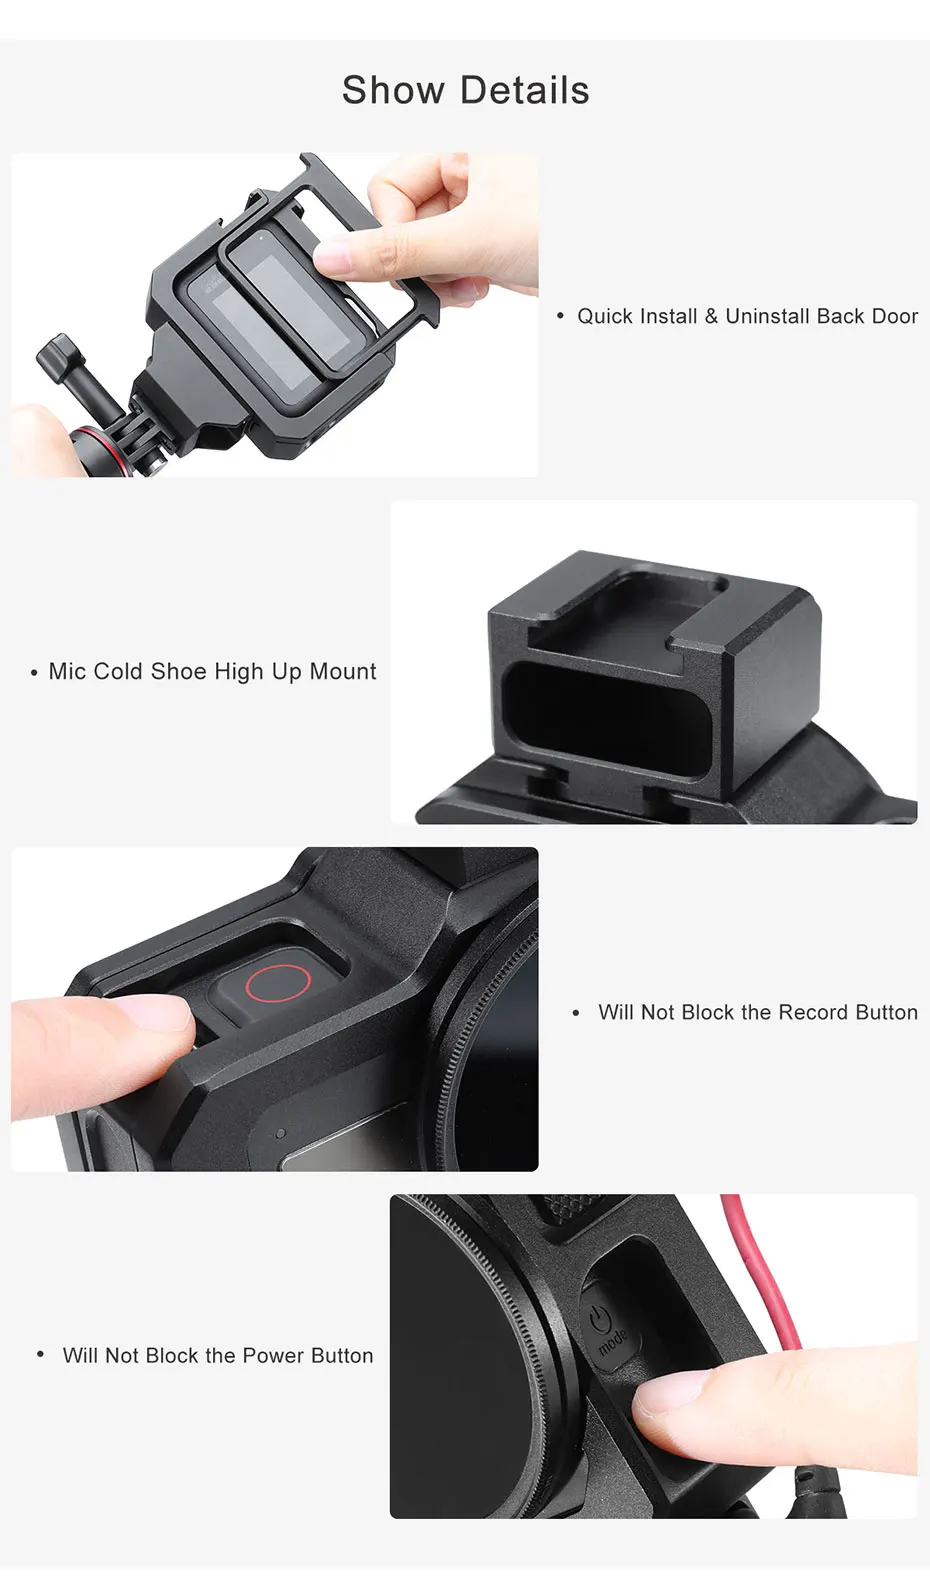 Ulanzi G8-5 металлическая клетка чехол корпус чехол для GoPro Hero 8 черный с холодным башмаком для микрофона заполняющий светильник Vlog аксессуар для камеры